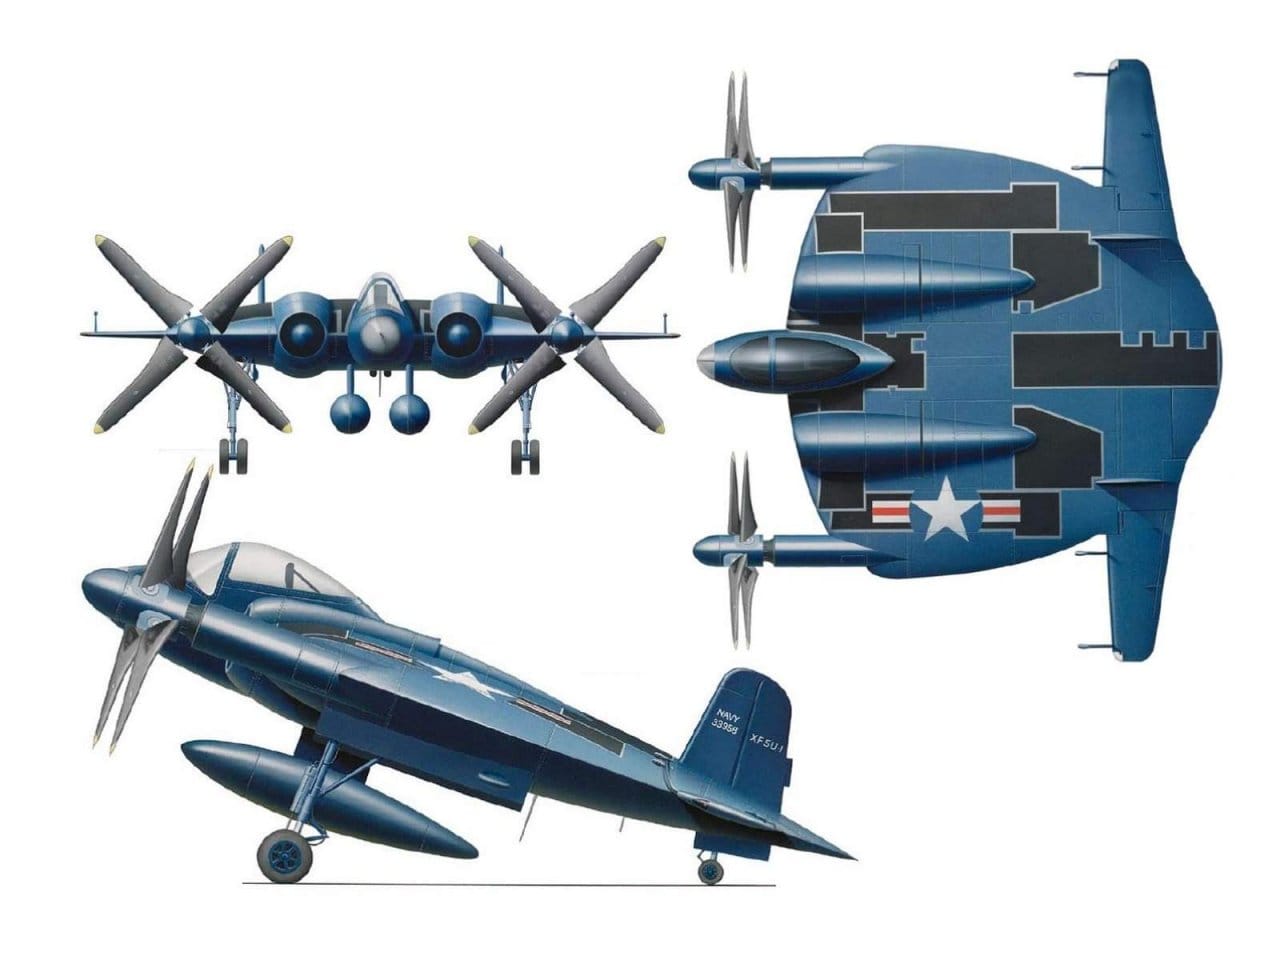 Авиамодель самолёта Vought V-173 «Skimmer» («Шумовка»).